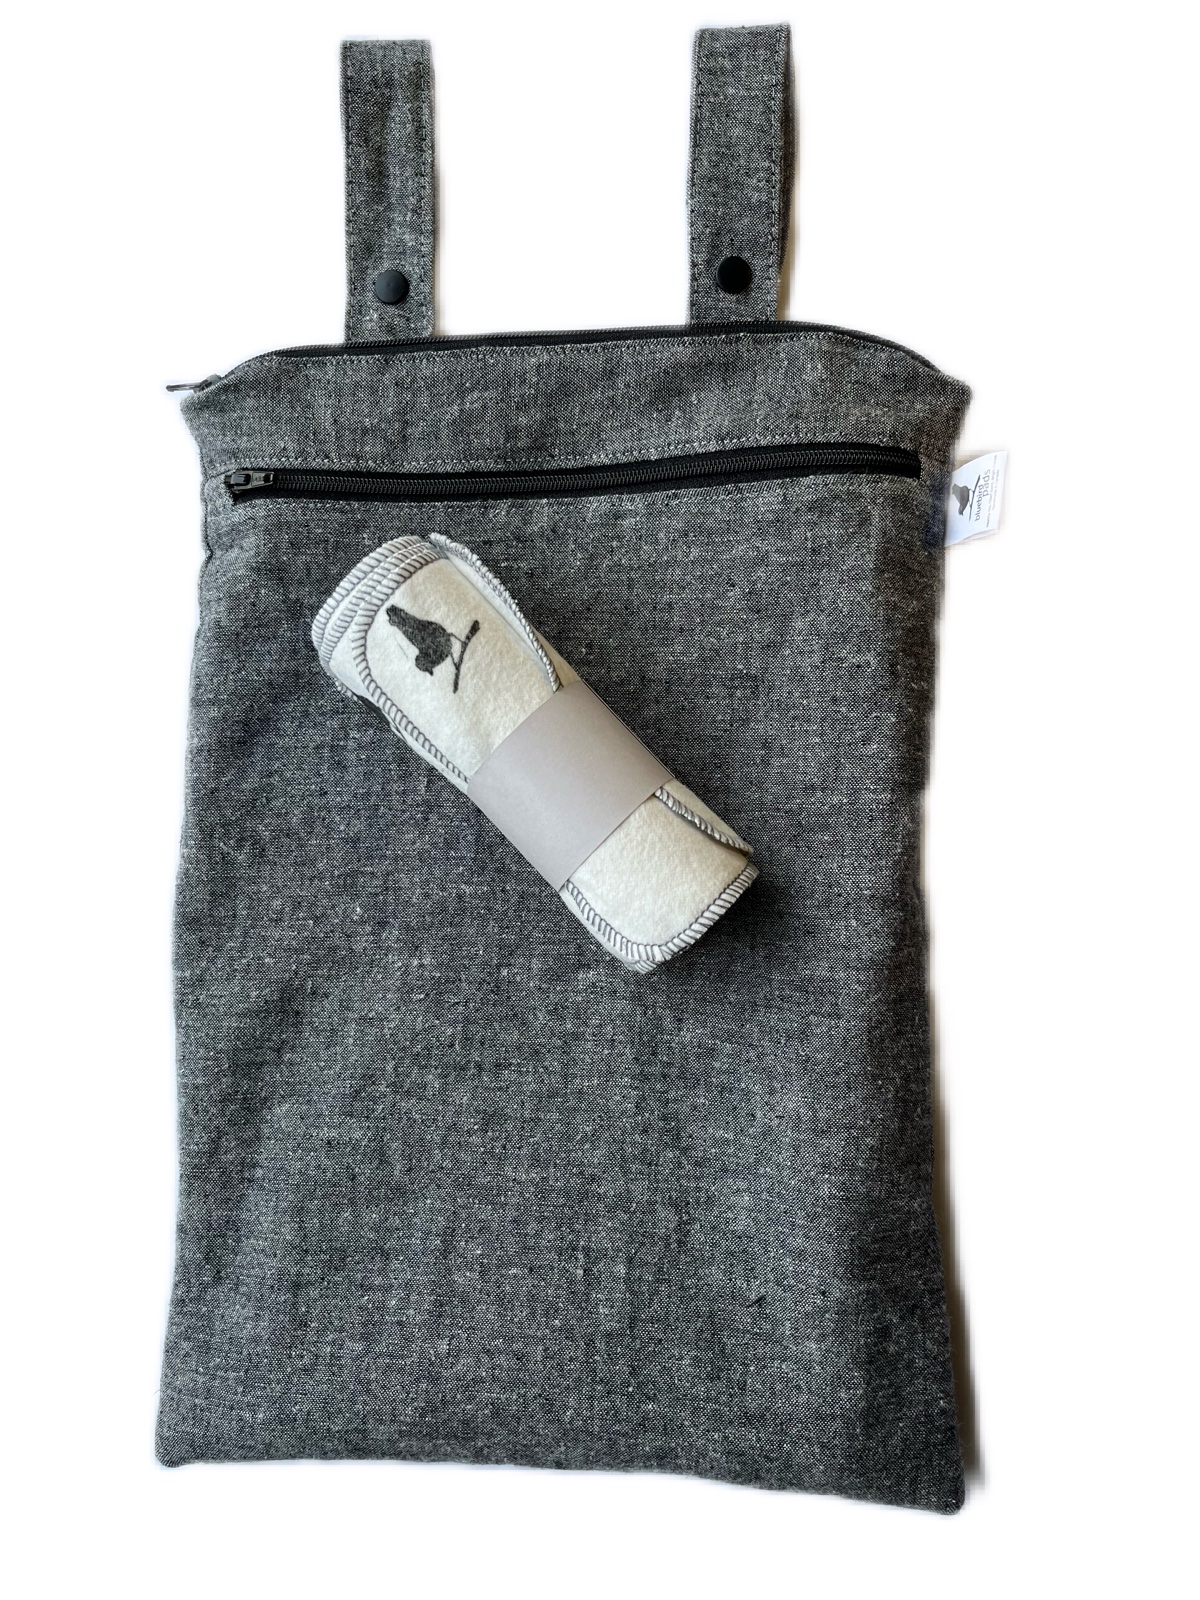 Starter Wipe Kit- Organic Cotton Wipes & Bag